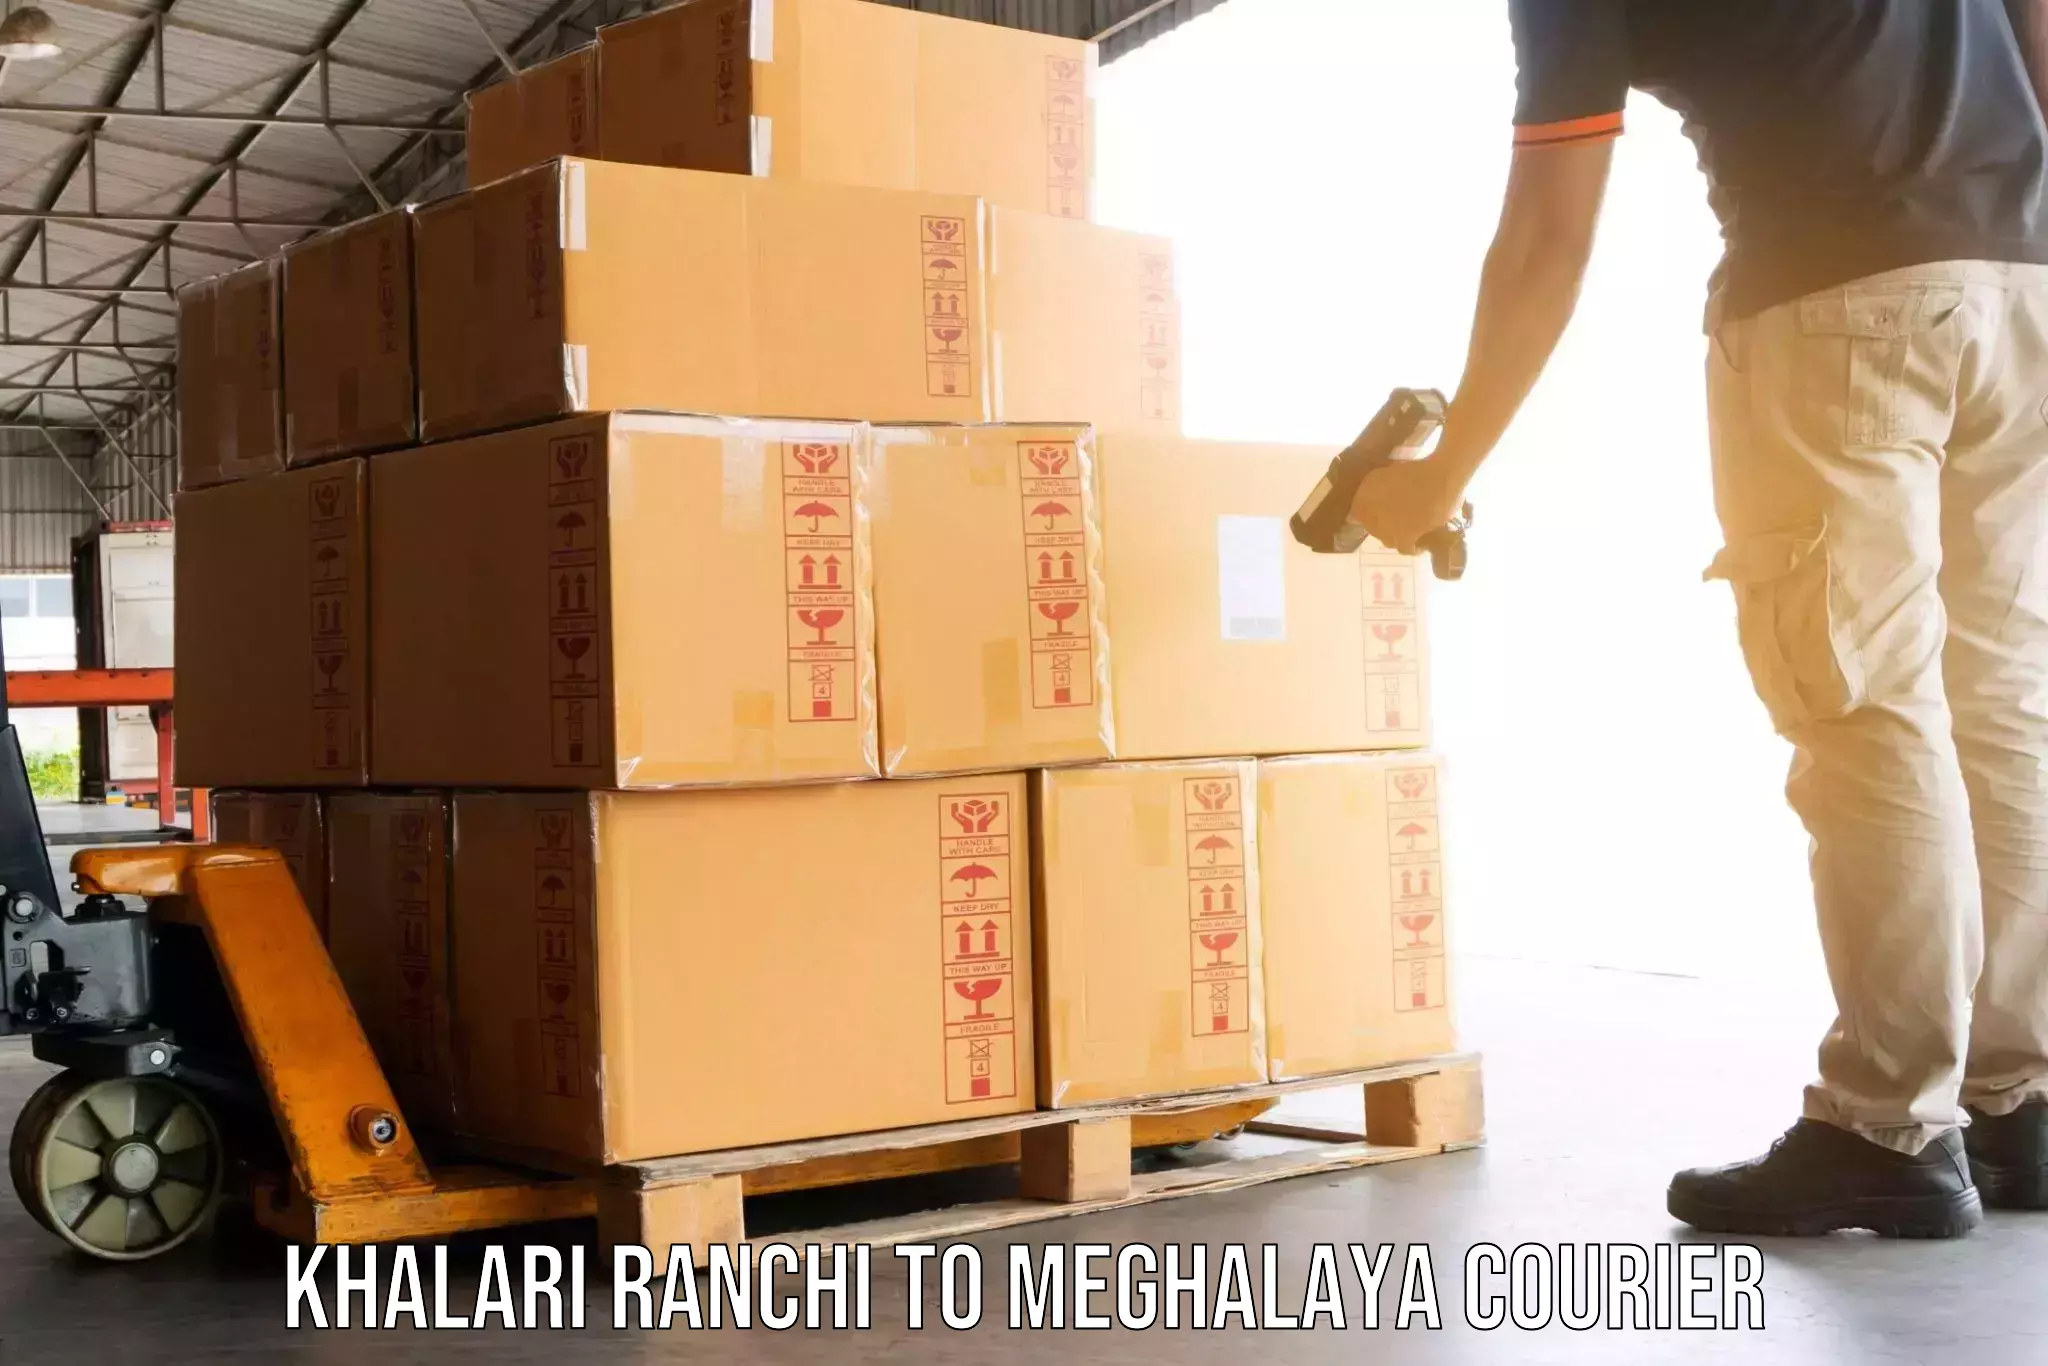 Moving and packing experts Khalari Ranchi to Tura